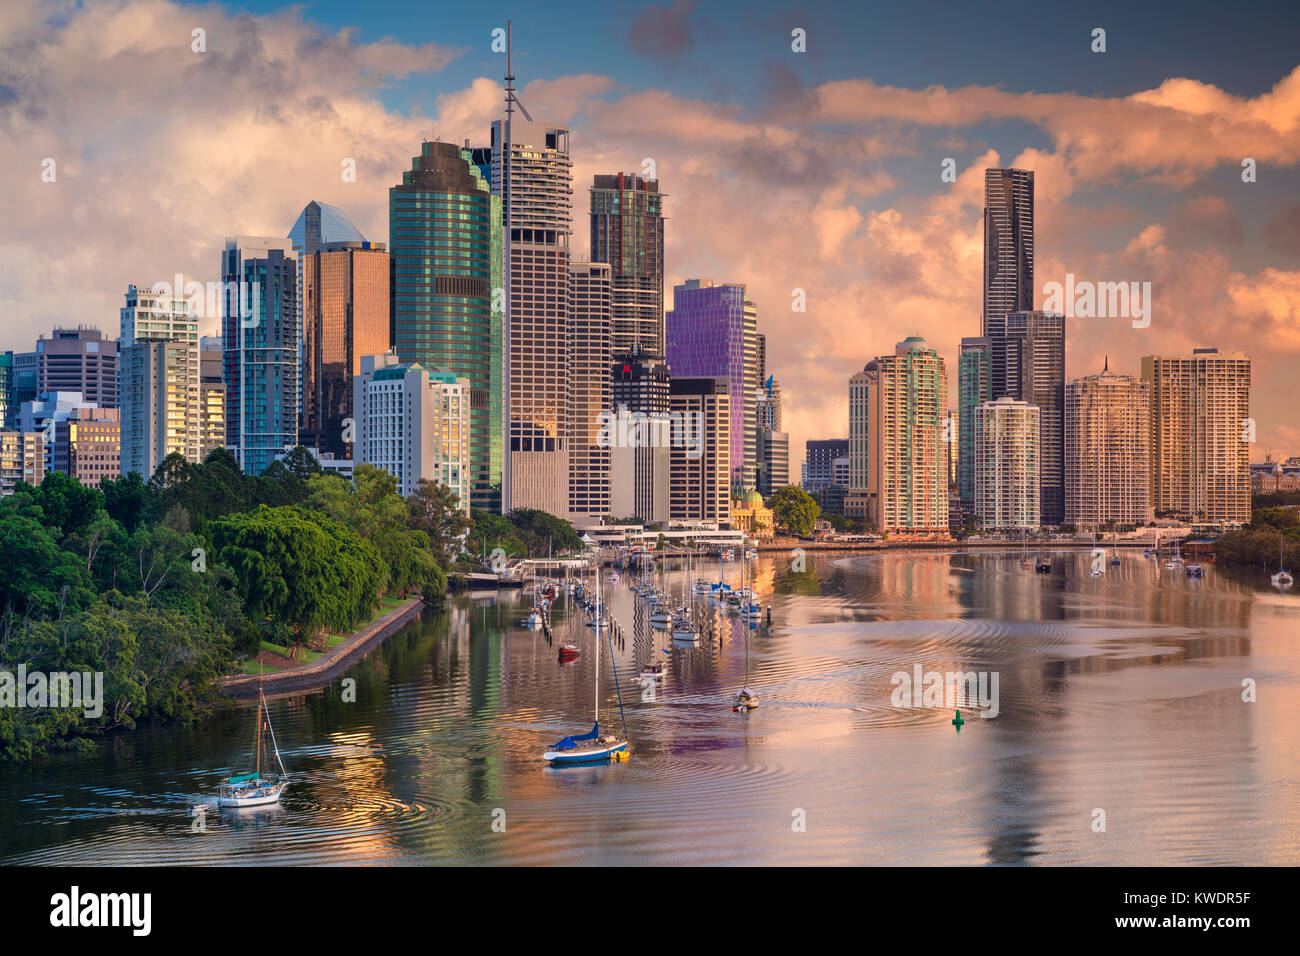 Brisbane. Cityscape image of Brisbane skyline, Australia during sunrise. Stock Photo